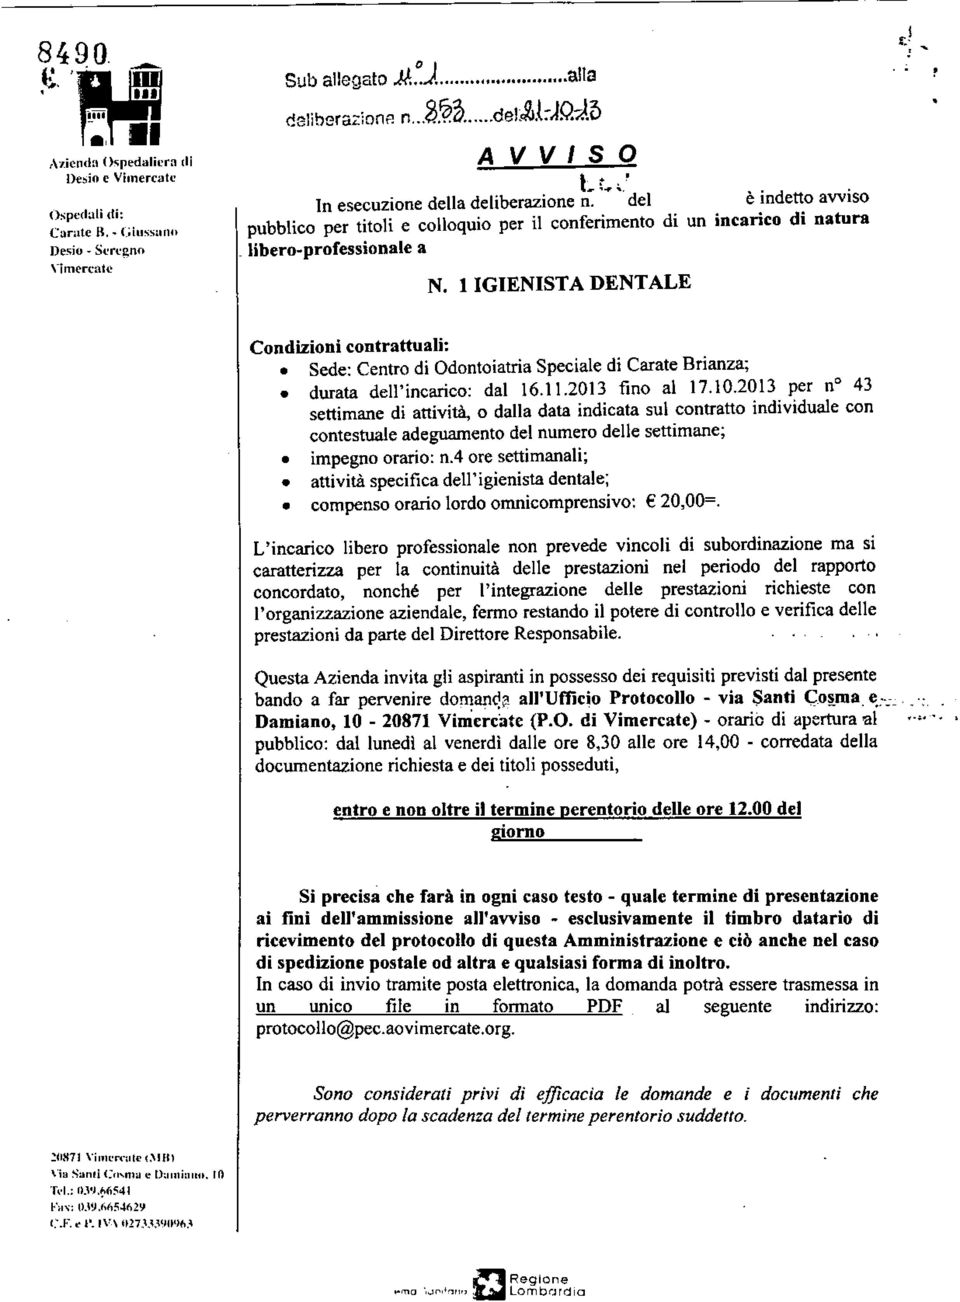 ' Condizioni contrattuali: Sede: Centro di Odontoiatria Speciale di Carate Brianza; durata dell'incarico: dat 16.11.2013 fino al 17.10.